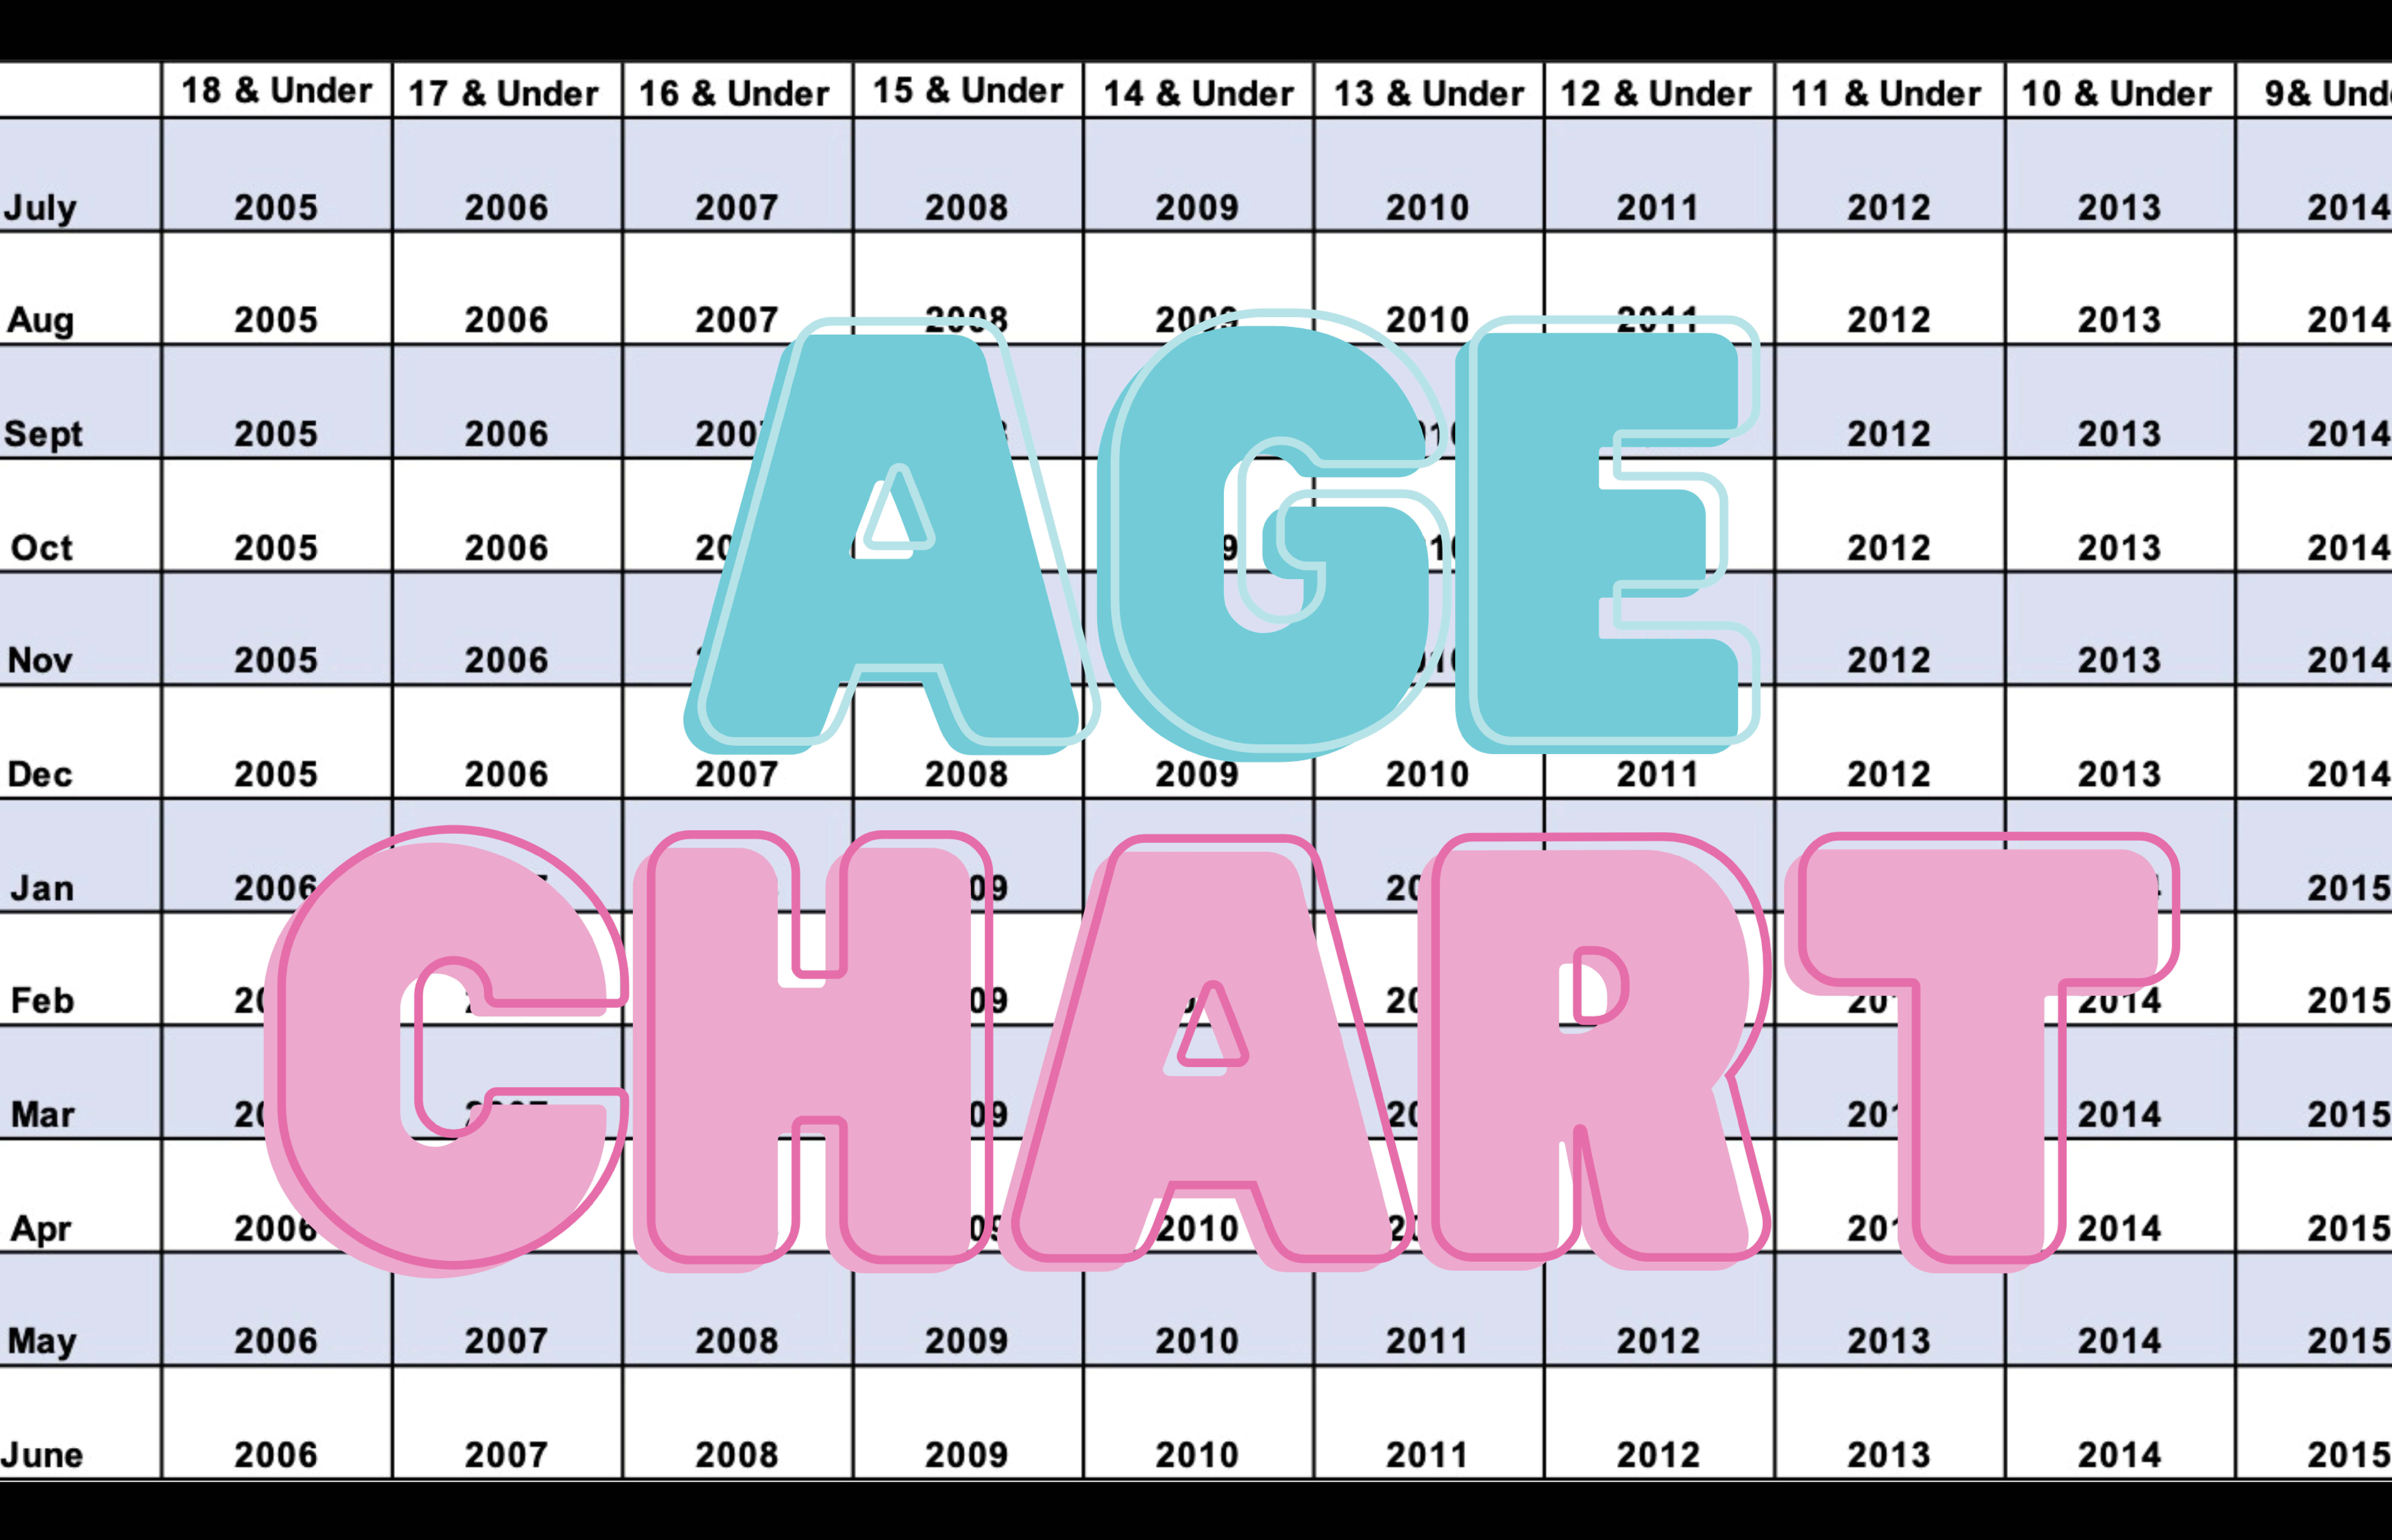 age chart